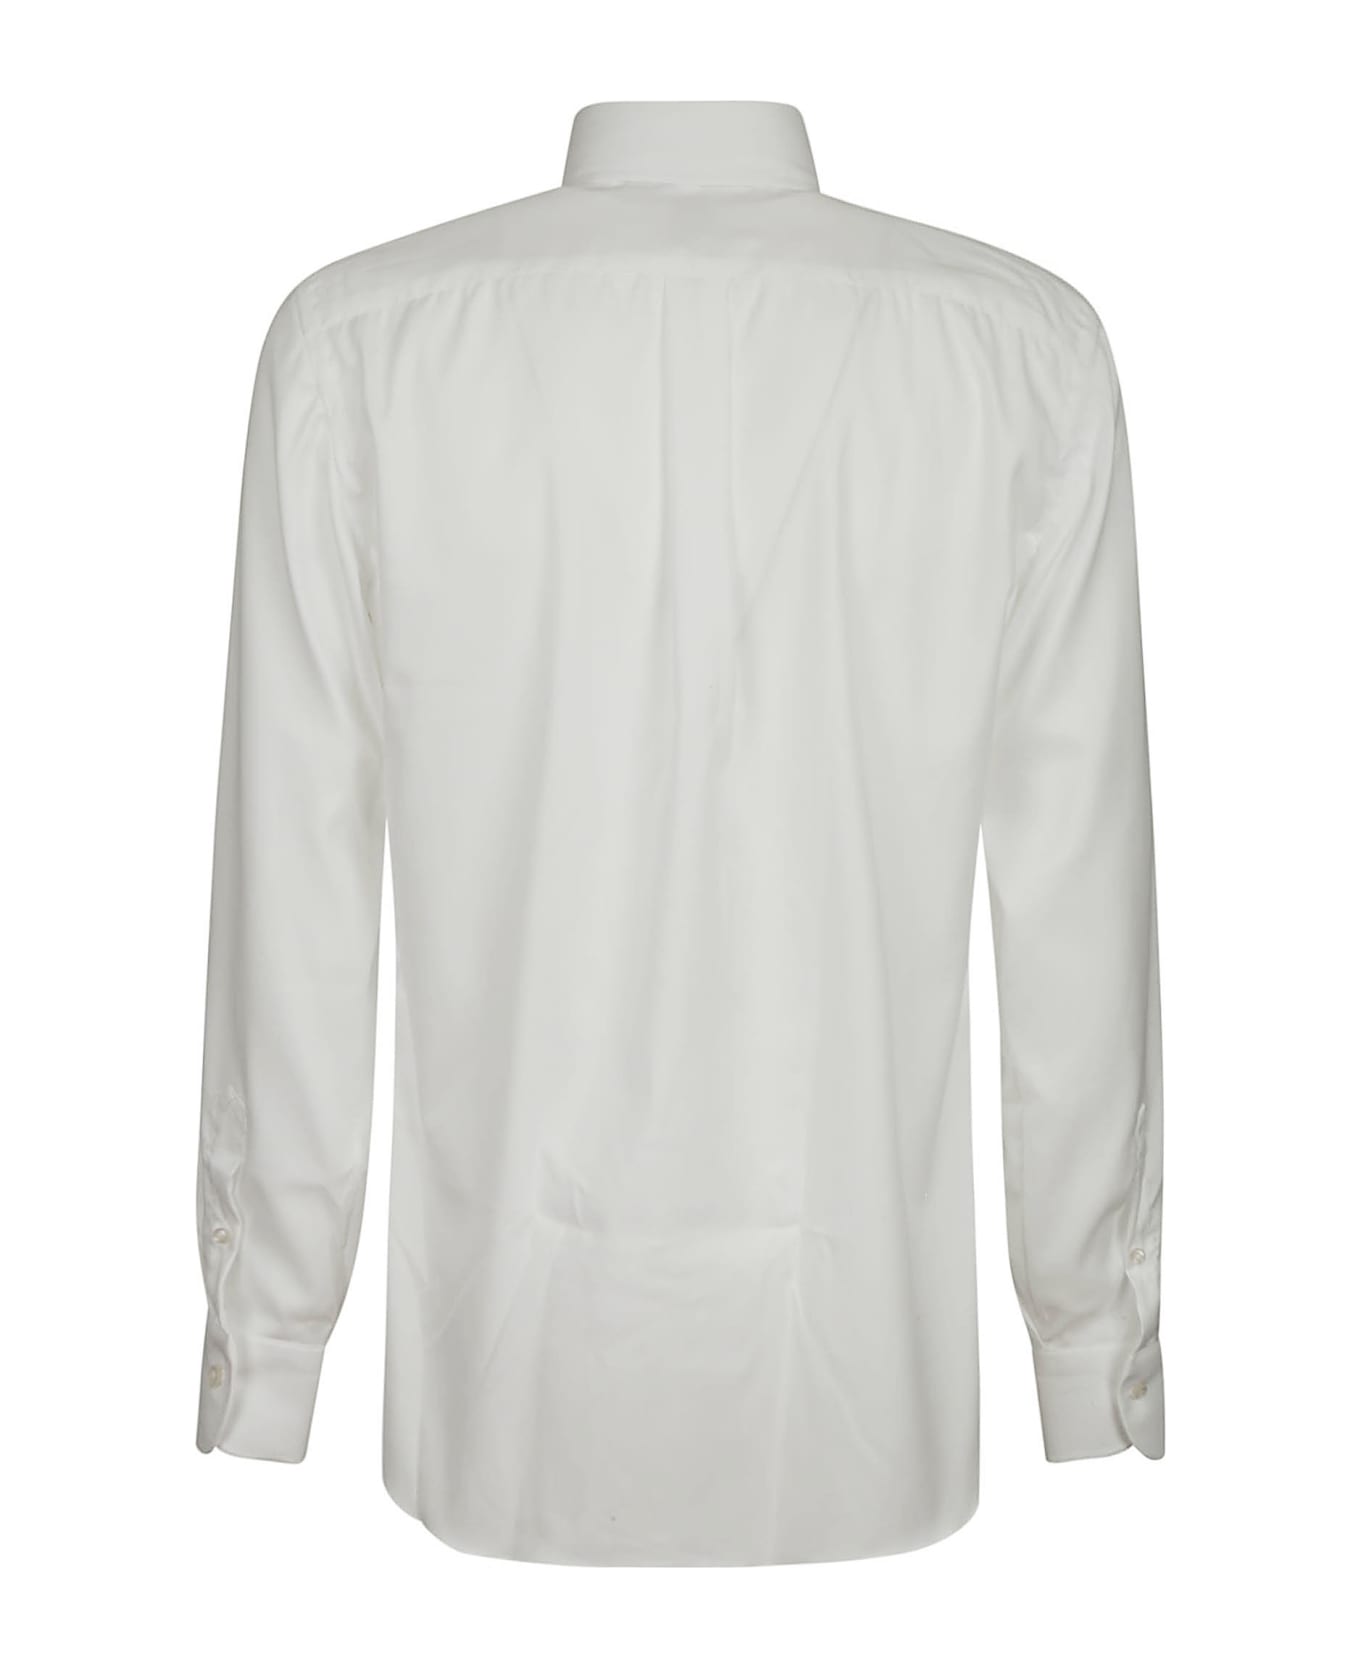 Borriello Napoli Shirt Botton Down - White